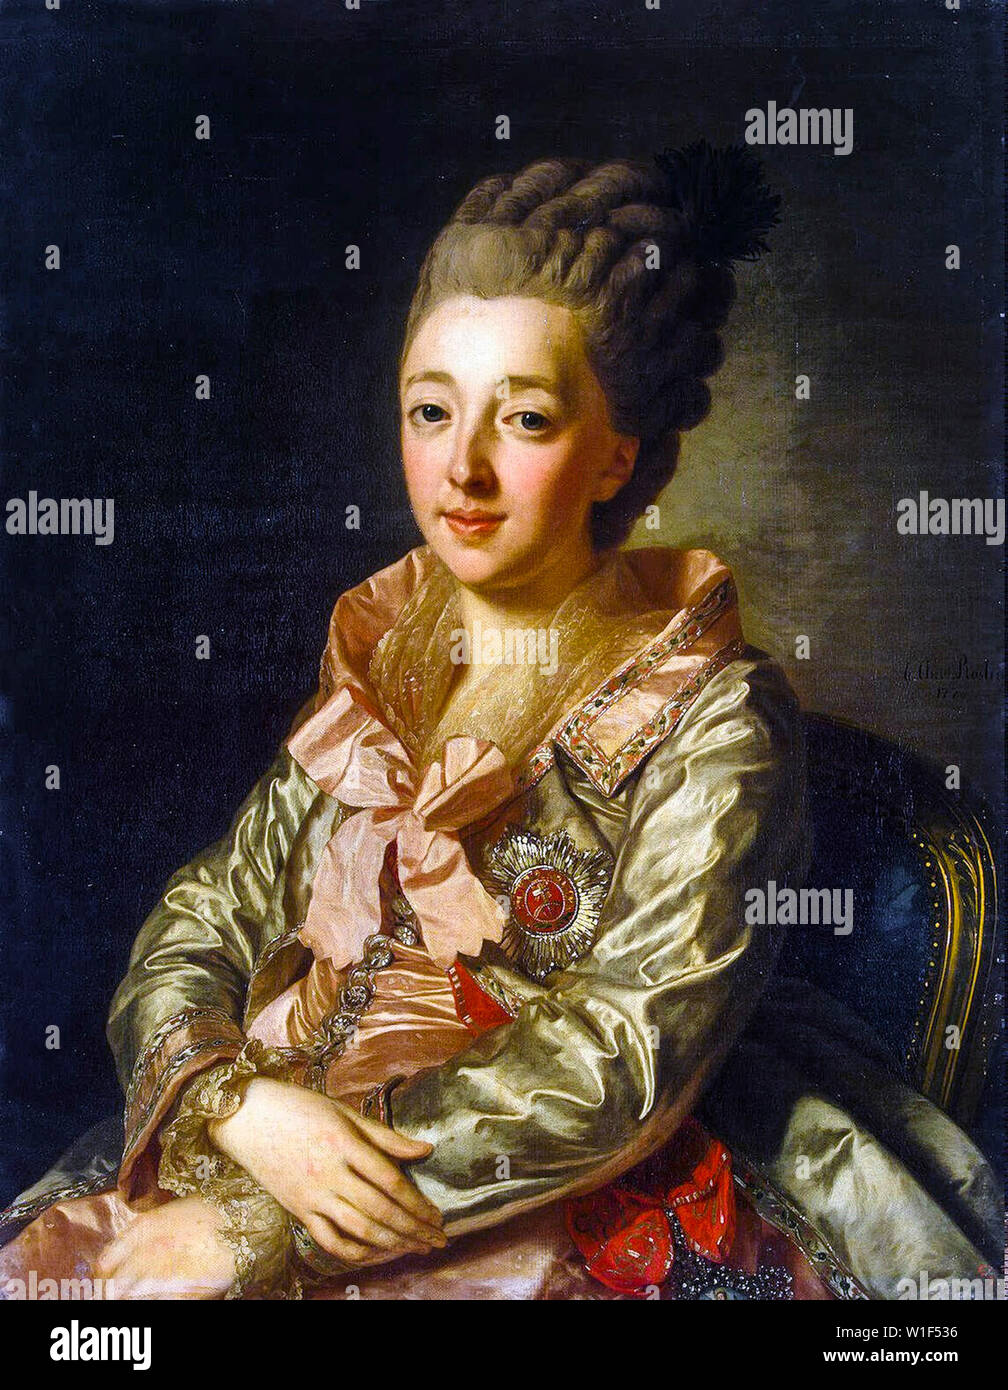 Alexander Roslin, Grand Duchess Natalia Alexeievna, Tsarevna of Russia, 1755-1776, portrait painting, 1776 Stock Photo